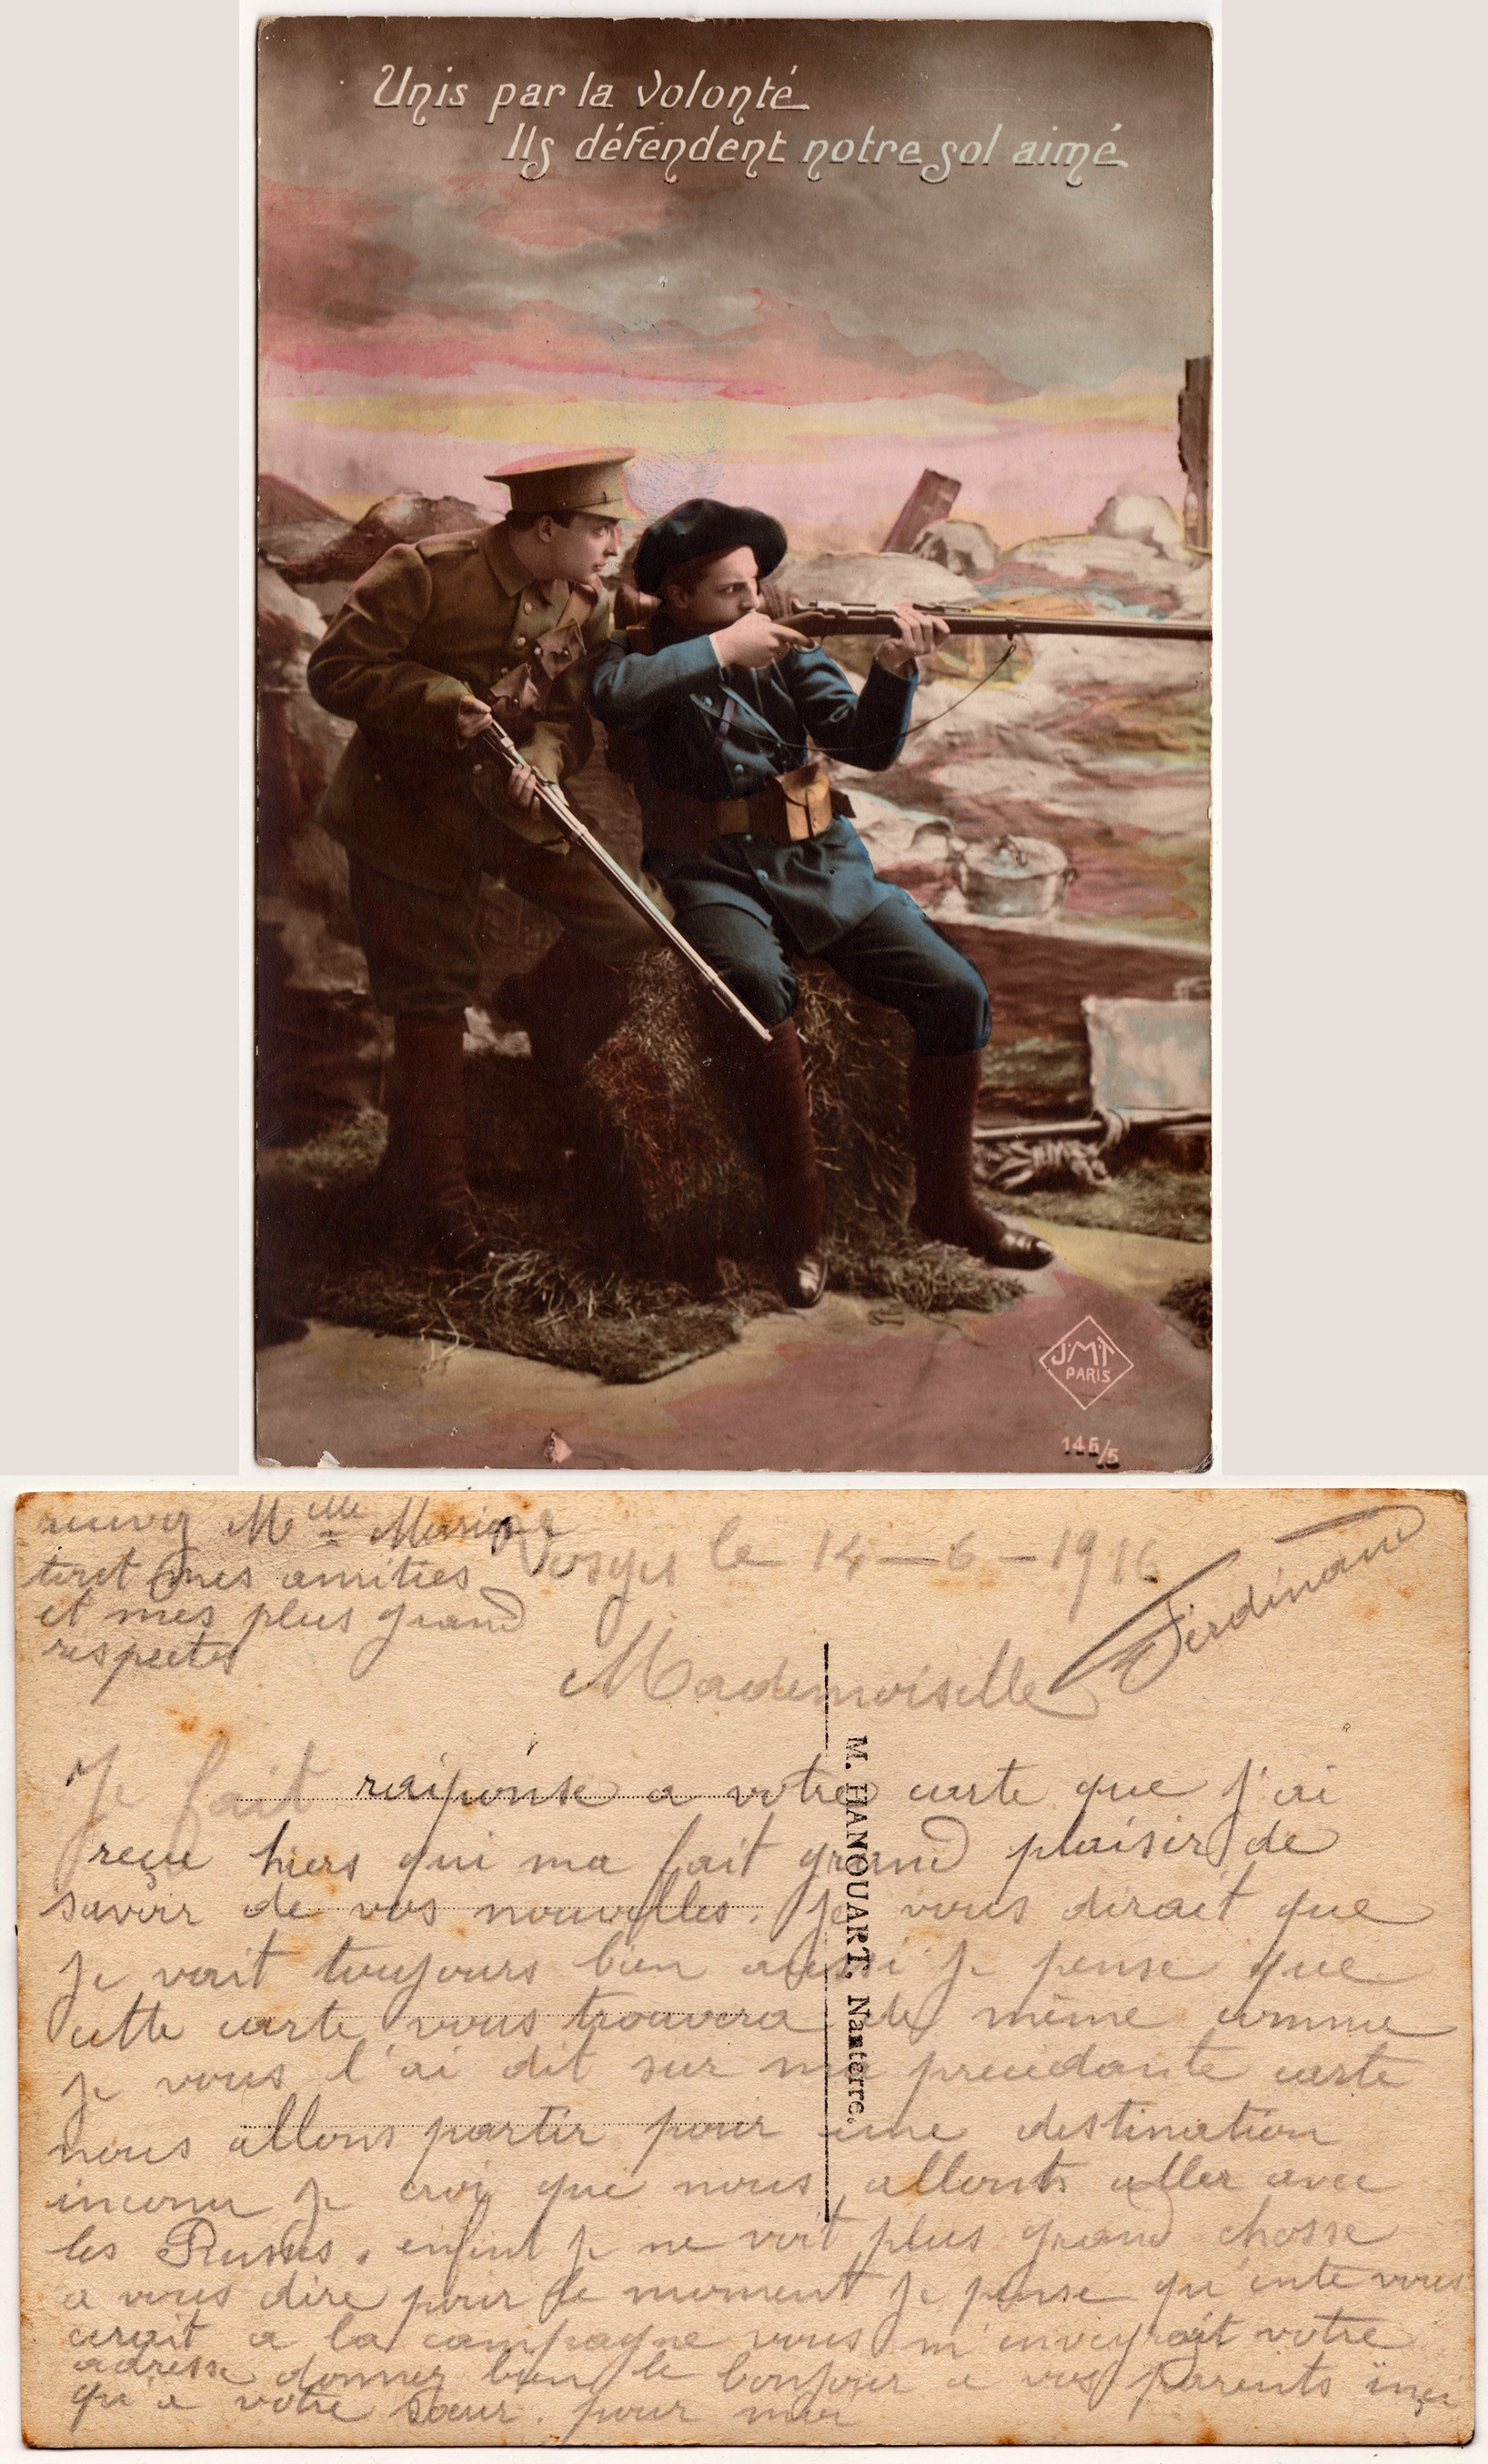 Cartes postales patriotiques françaises de la Grande Guerre - recensement - Page 3 Ec27d5874493cd26ceb7e7117273b110e94d54fc